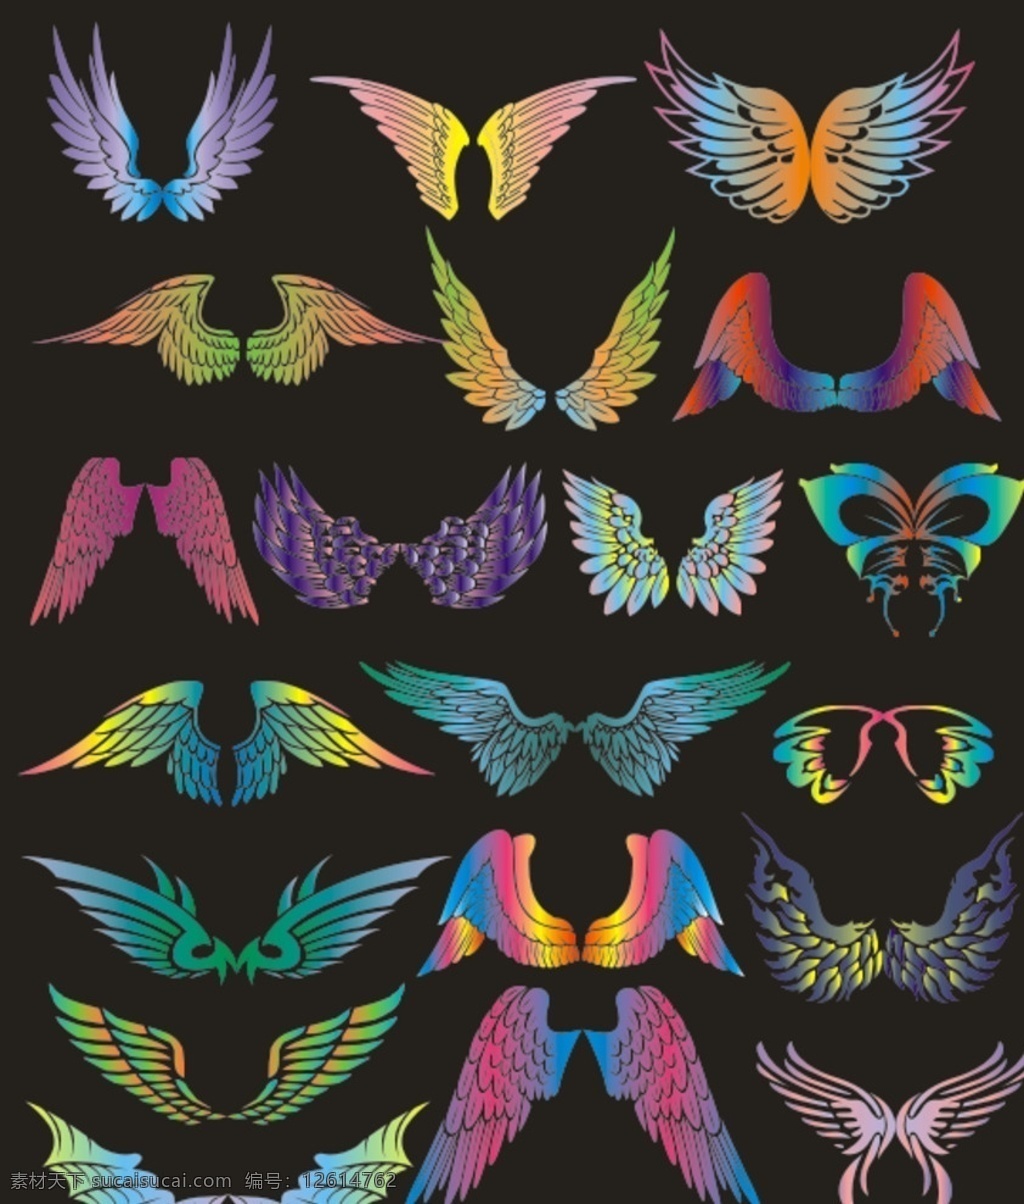 翅膀 天使翅膀 翅膀矢量图 蝴蝶 翅膀素材 底纹边框 花边花纹